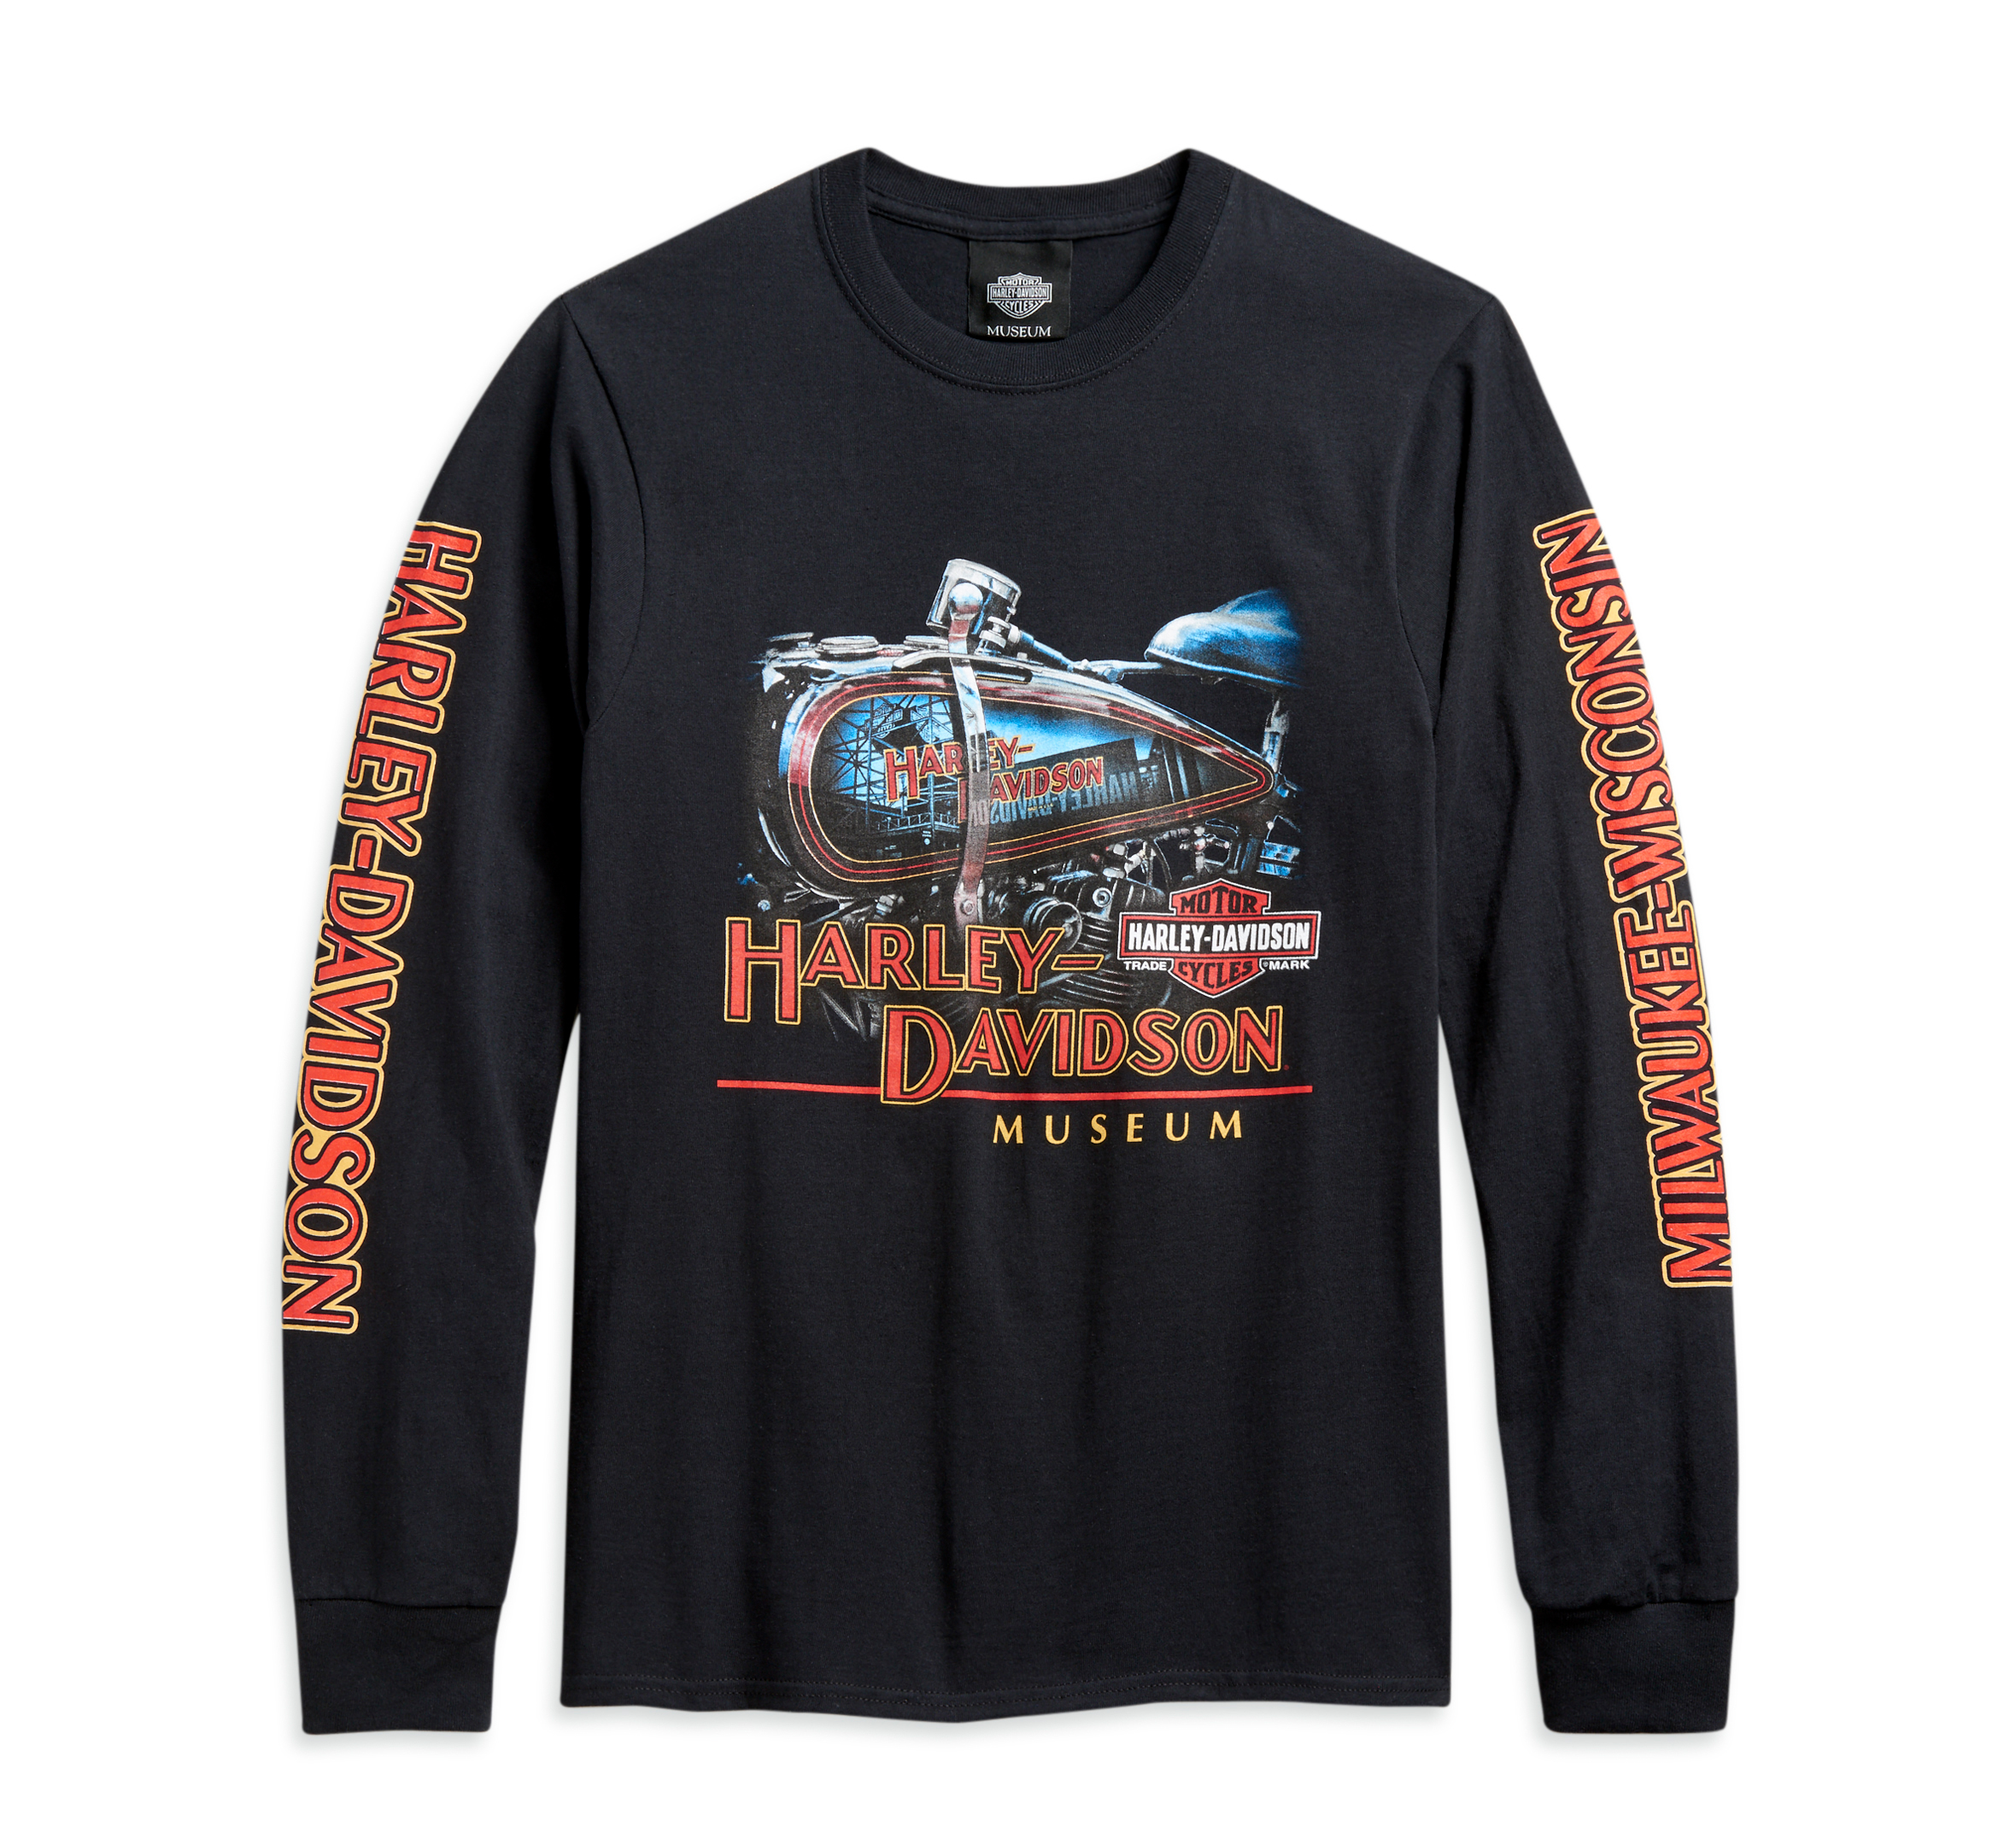 17,080円Harley Davidson tee